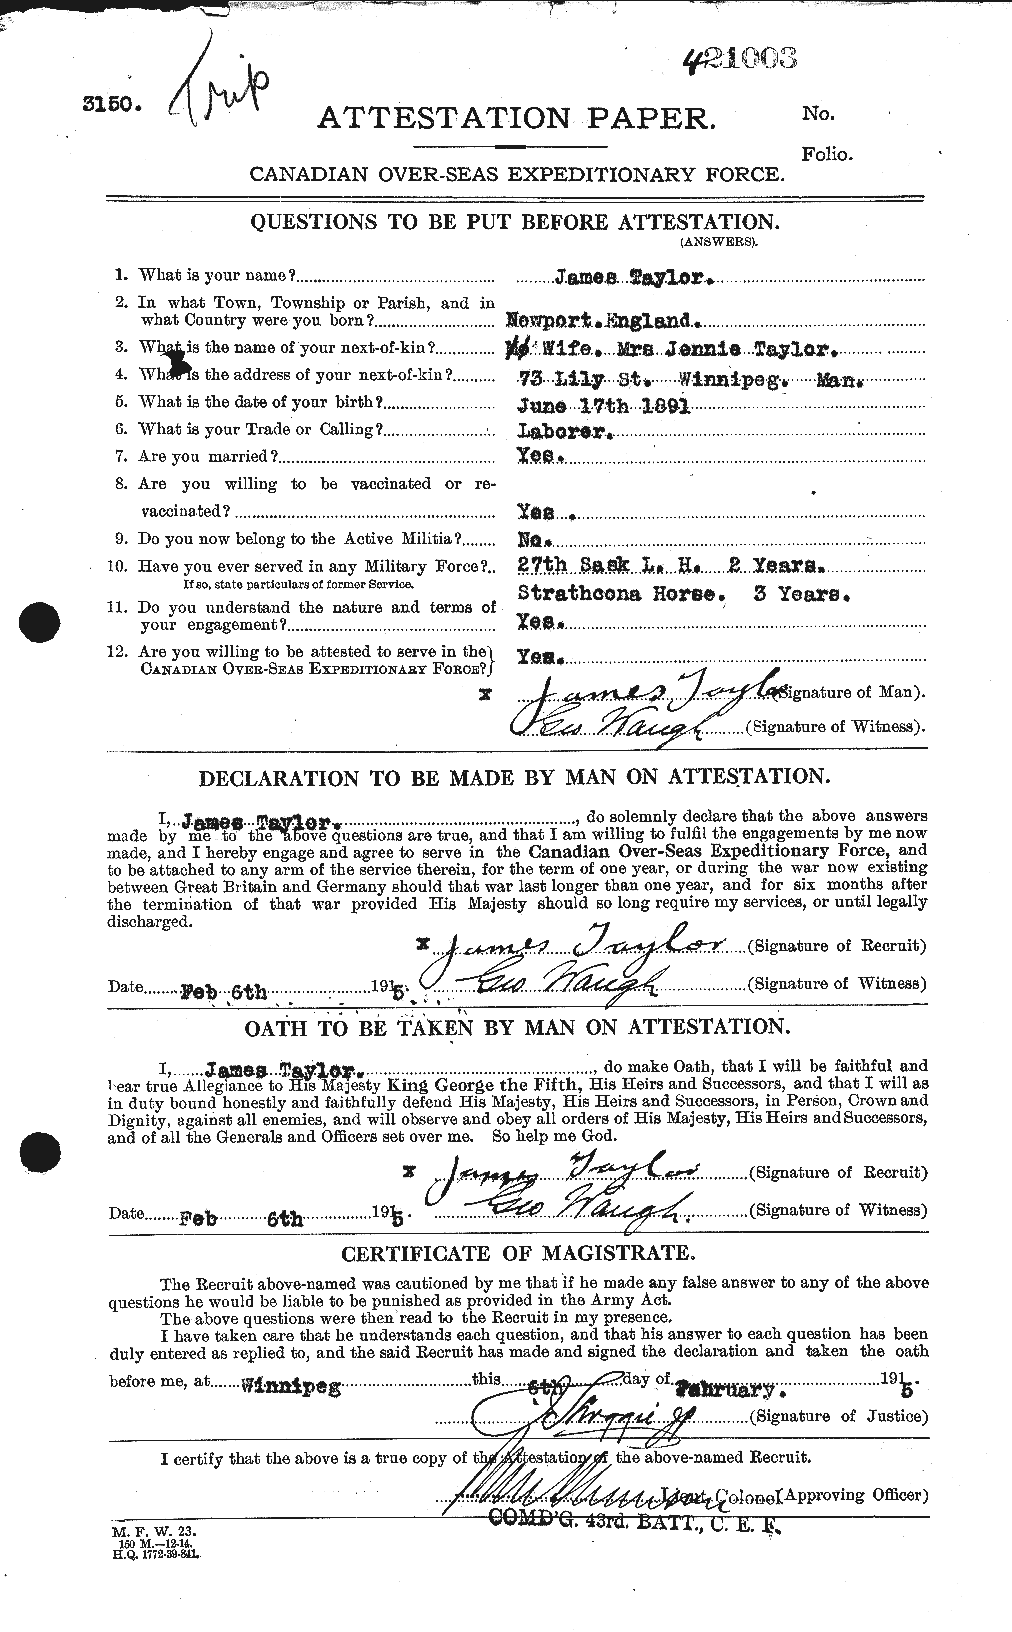 Dossiers du Personnel de la Première Guerre mondiale - CEC 626690a